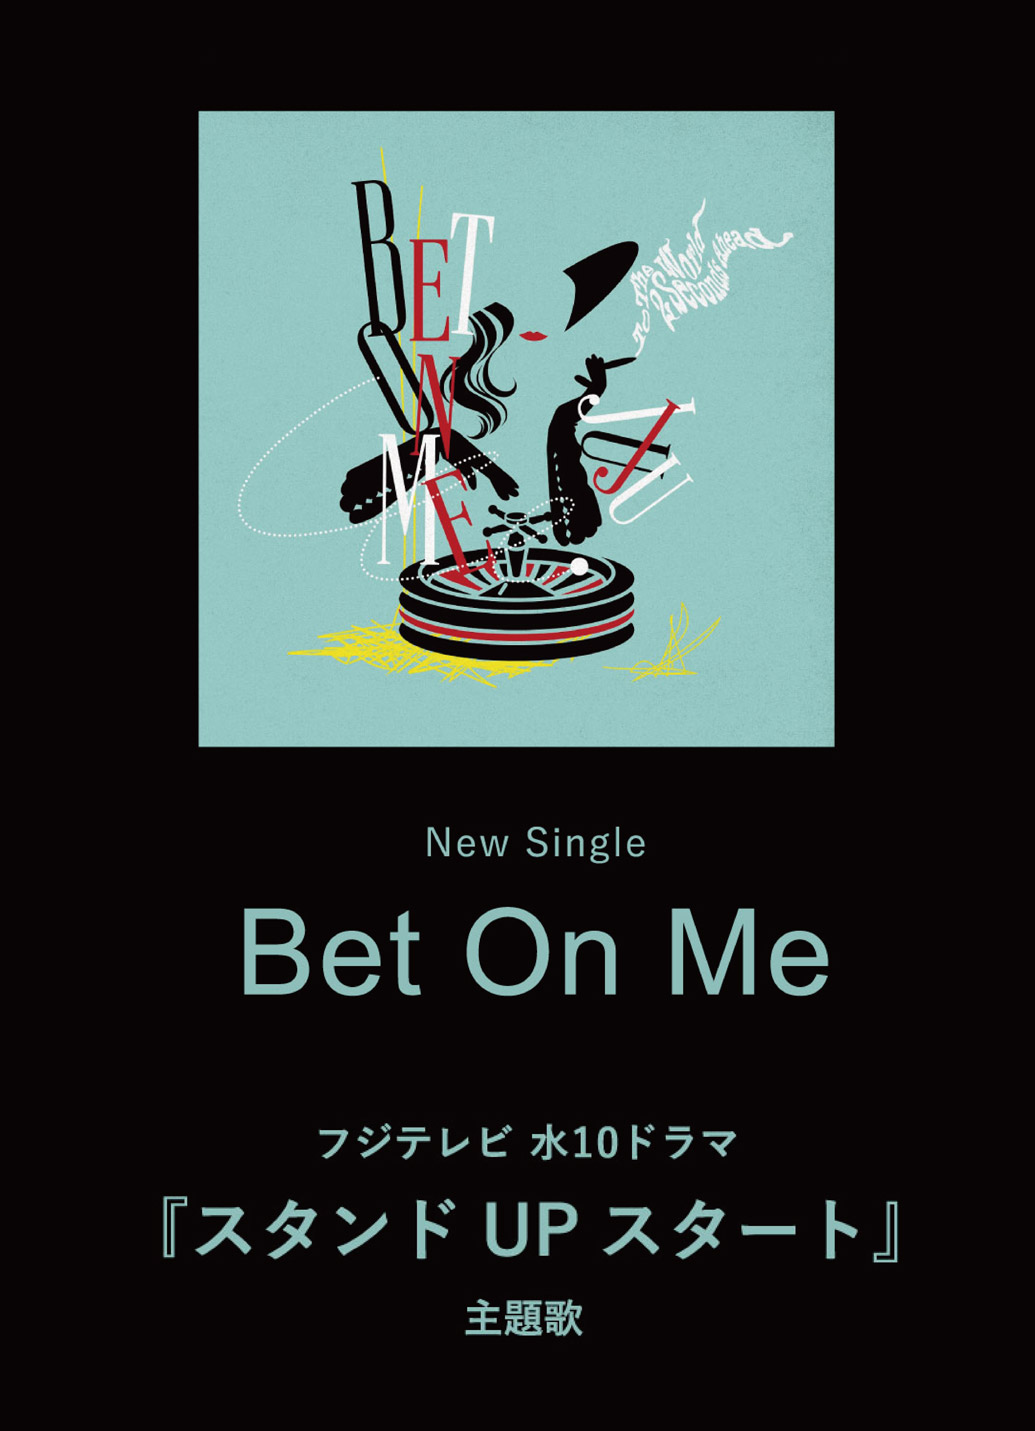 New Single「Bet On Me」フジテレビ 水10ドラマ『スタンドUPスタート』主題歌 2.15 先行配信 3.15 Release